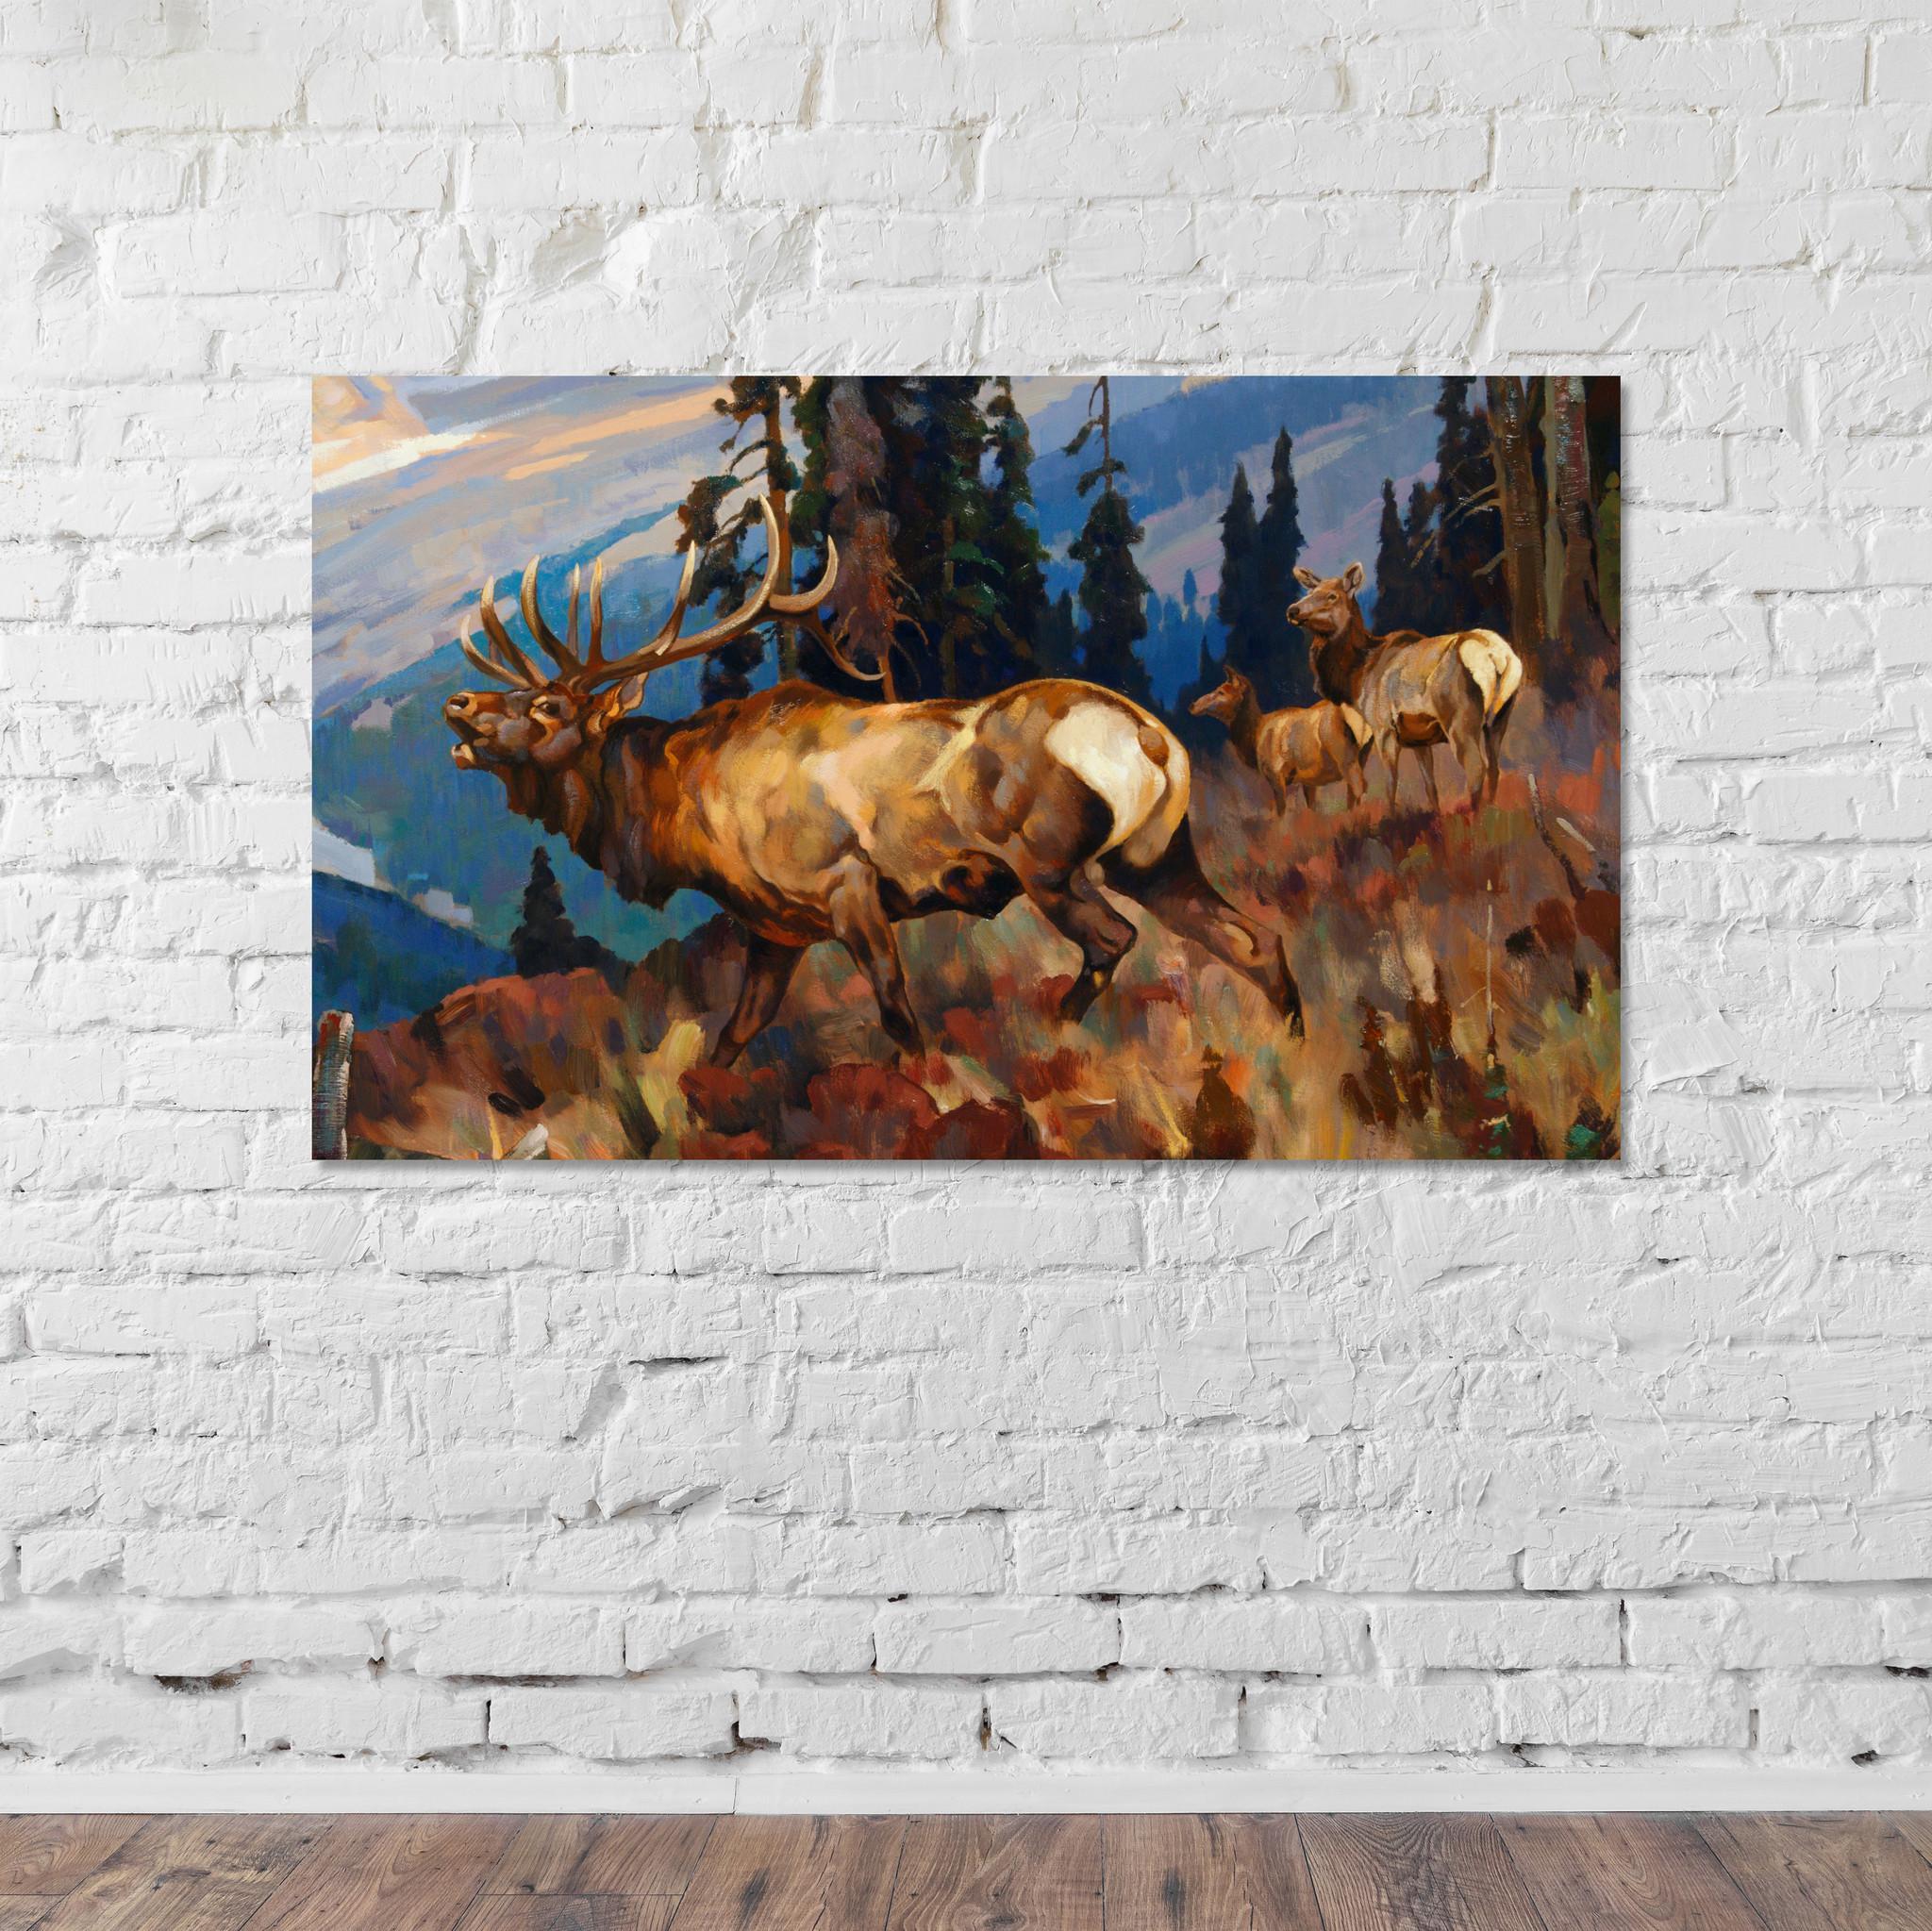 Außergewöhnliche Malerei. Das Lieblingsbild des Künstlers Greg Parker aus Nord-Idaho. Öl auf Leinwand. 40